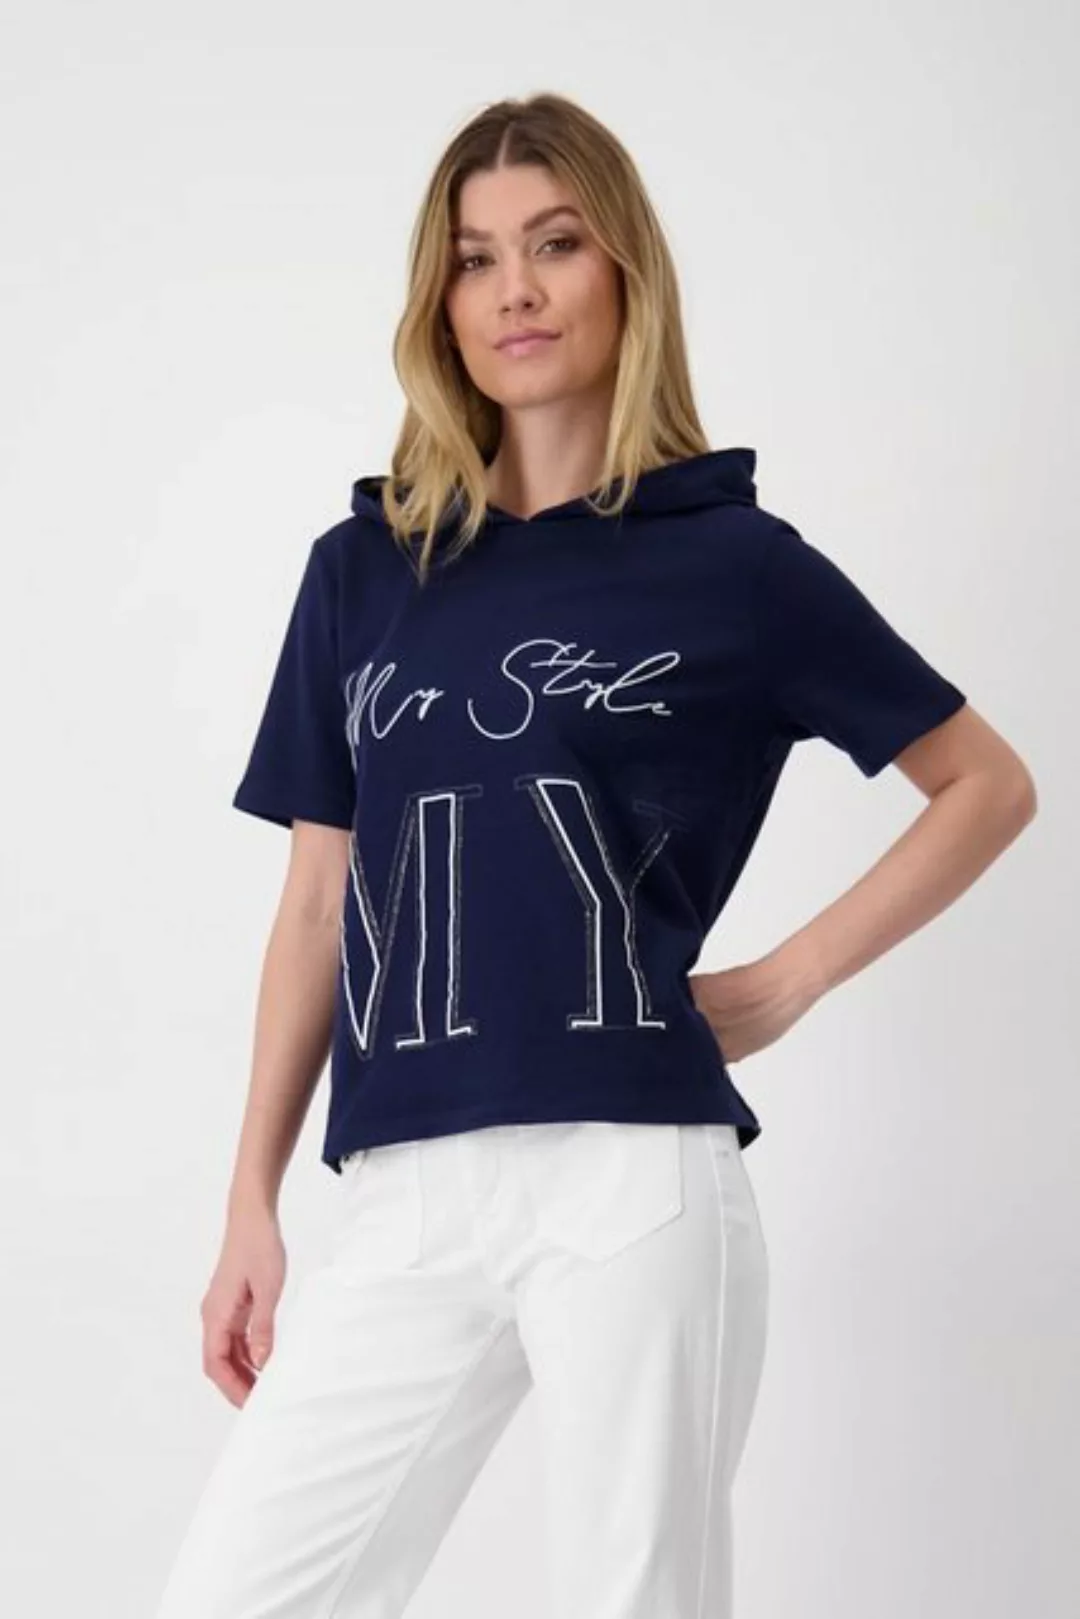 Monari Sweater günstig online kaufen